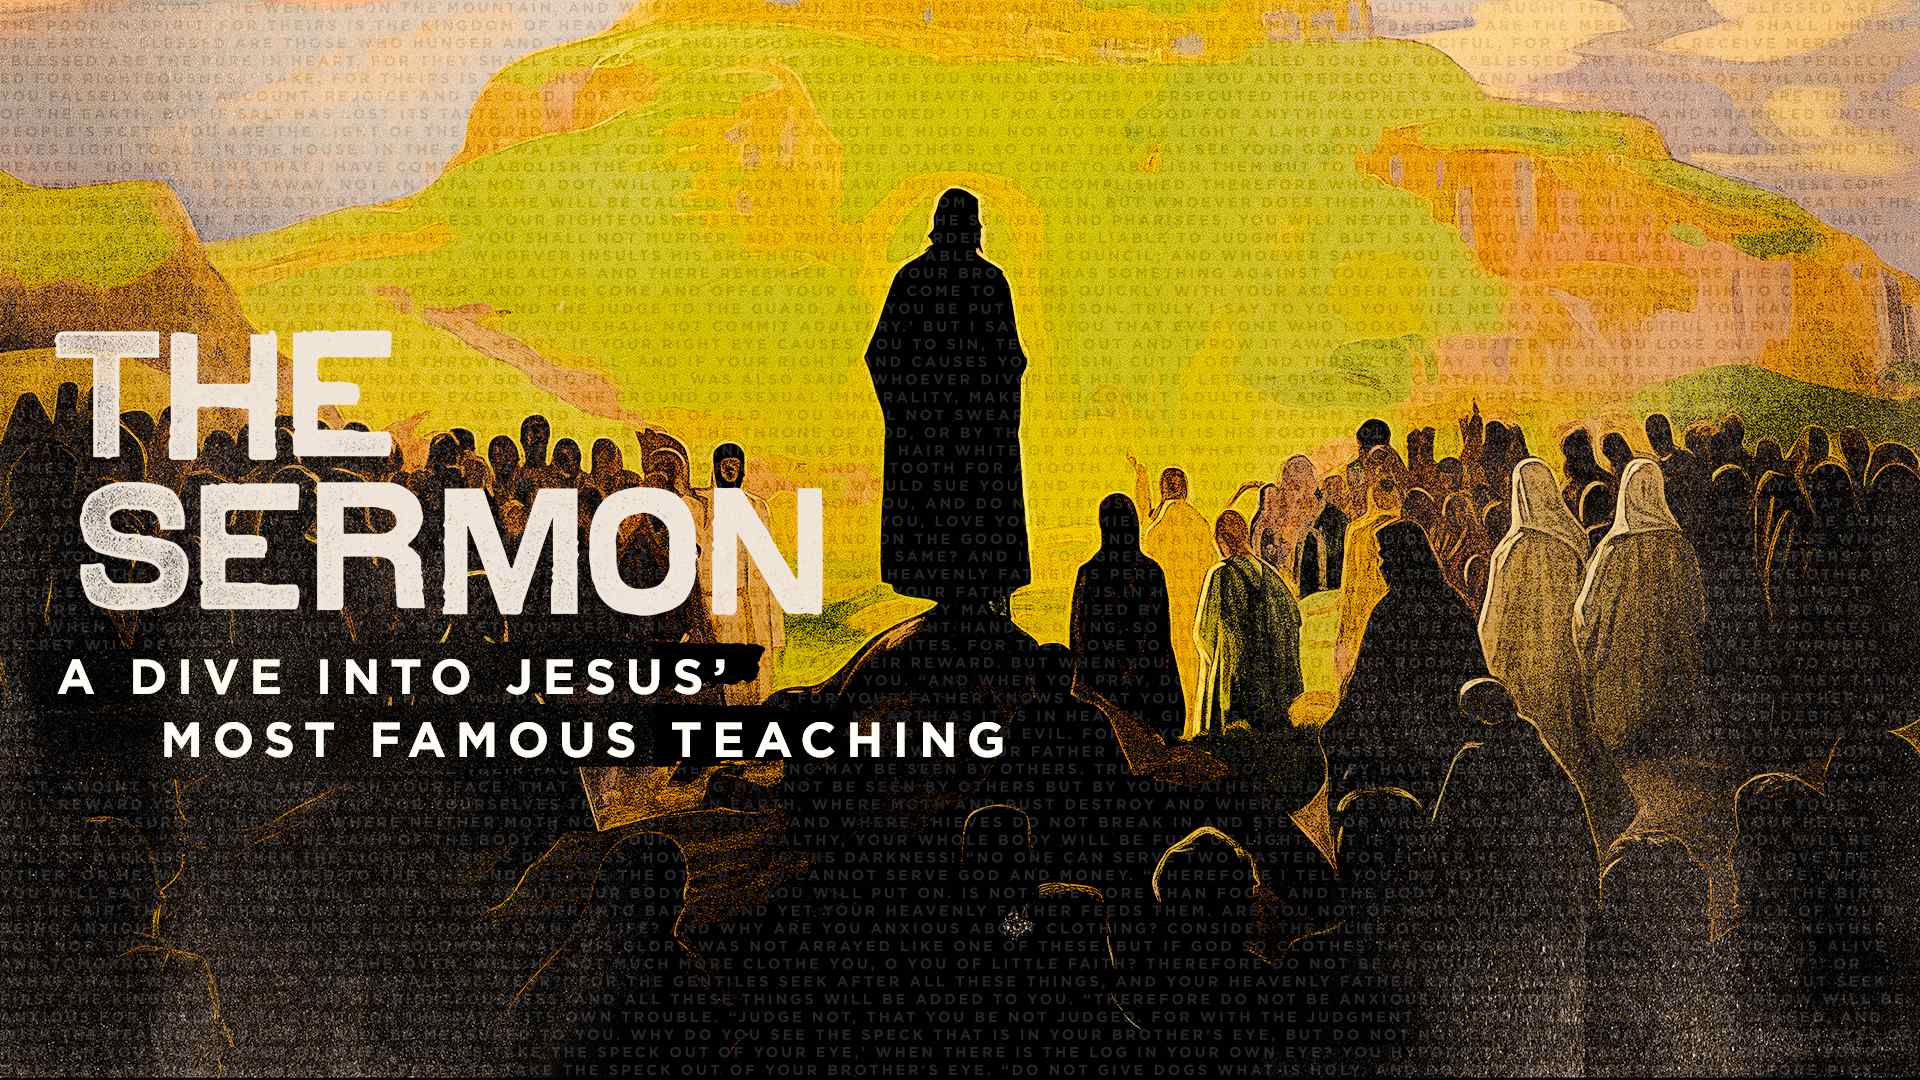 Follow Me - The Sermon